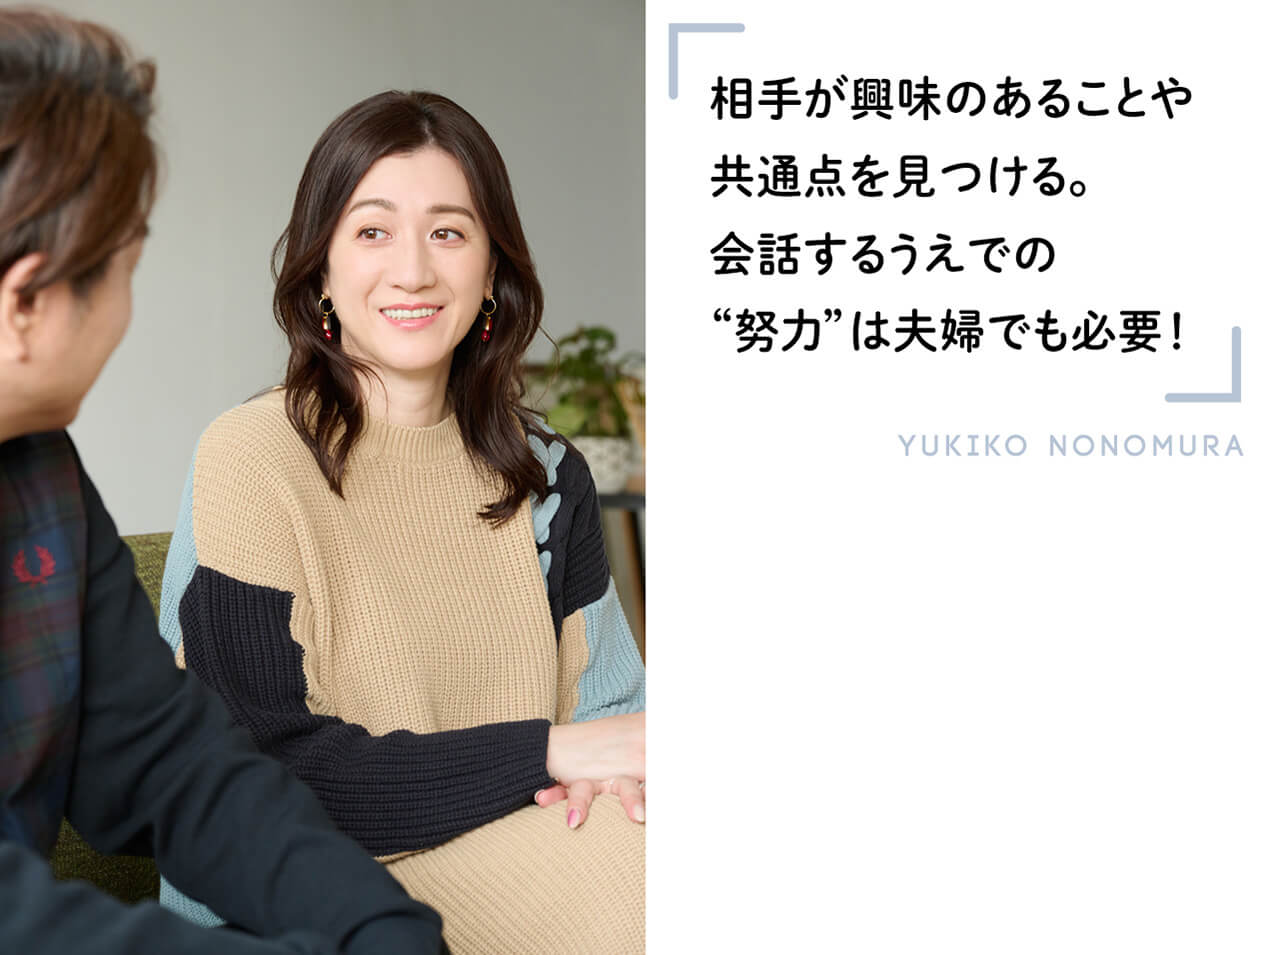 相手が興味のあることや共通点を見つける。会話するうえでの“努力”は夫婦でも必要！　YUKIKO NONOMURA